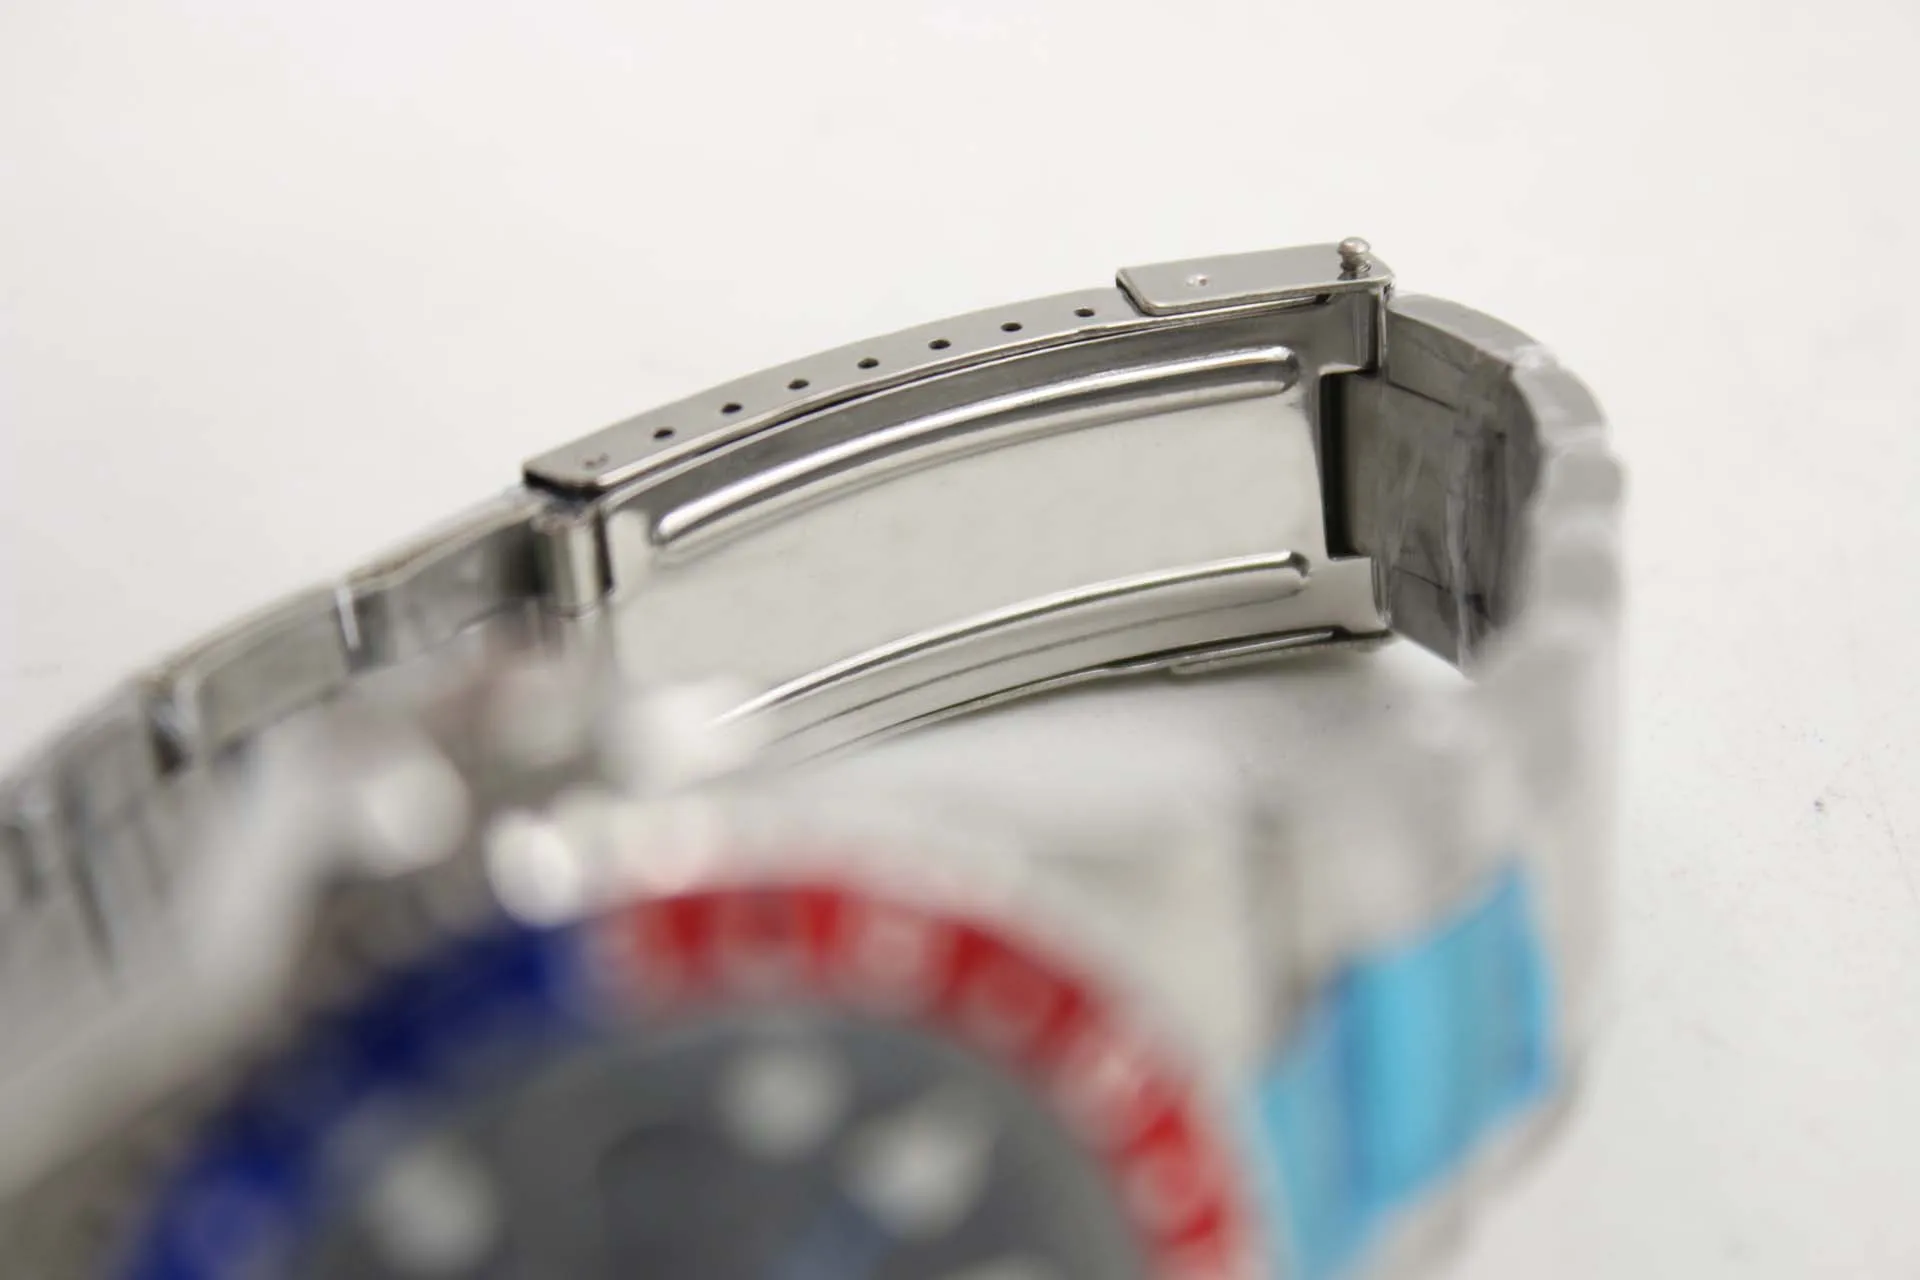 Orologio meccanico da uomo 116710 business casual moderno argento bianco cassa in acciaio inossidabile blu bordo rosso quadrante nero calendario a 4 pin316A